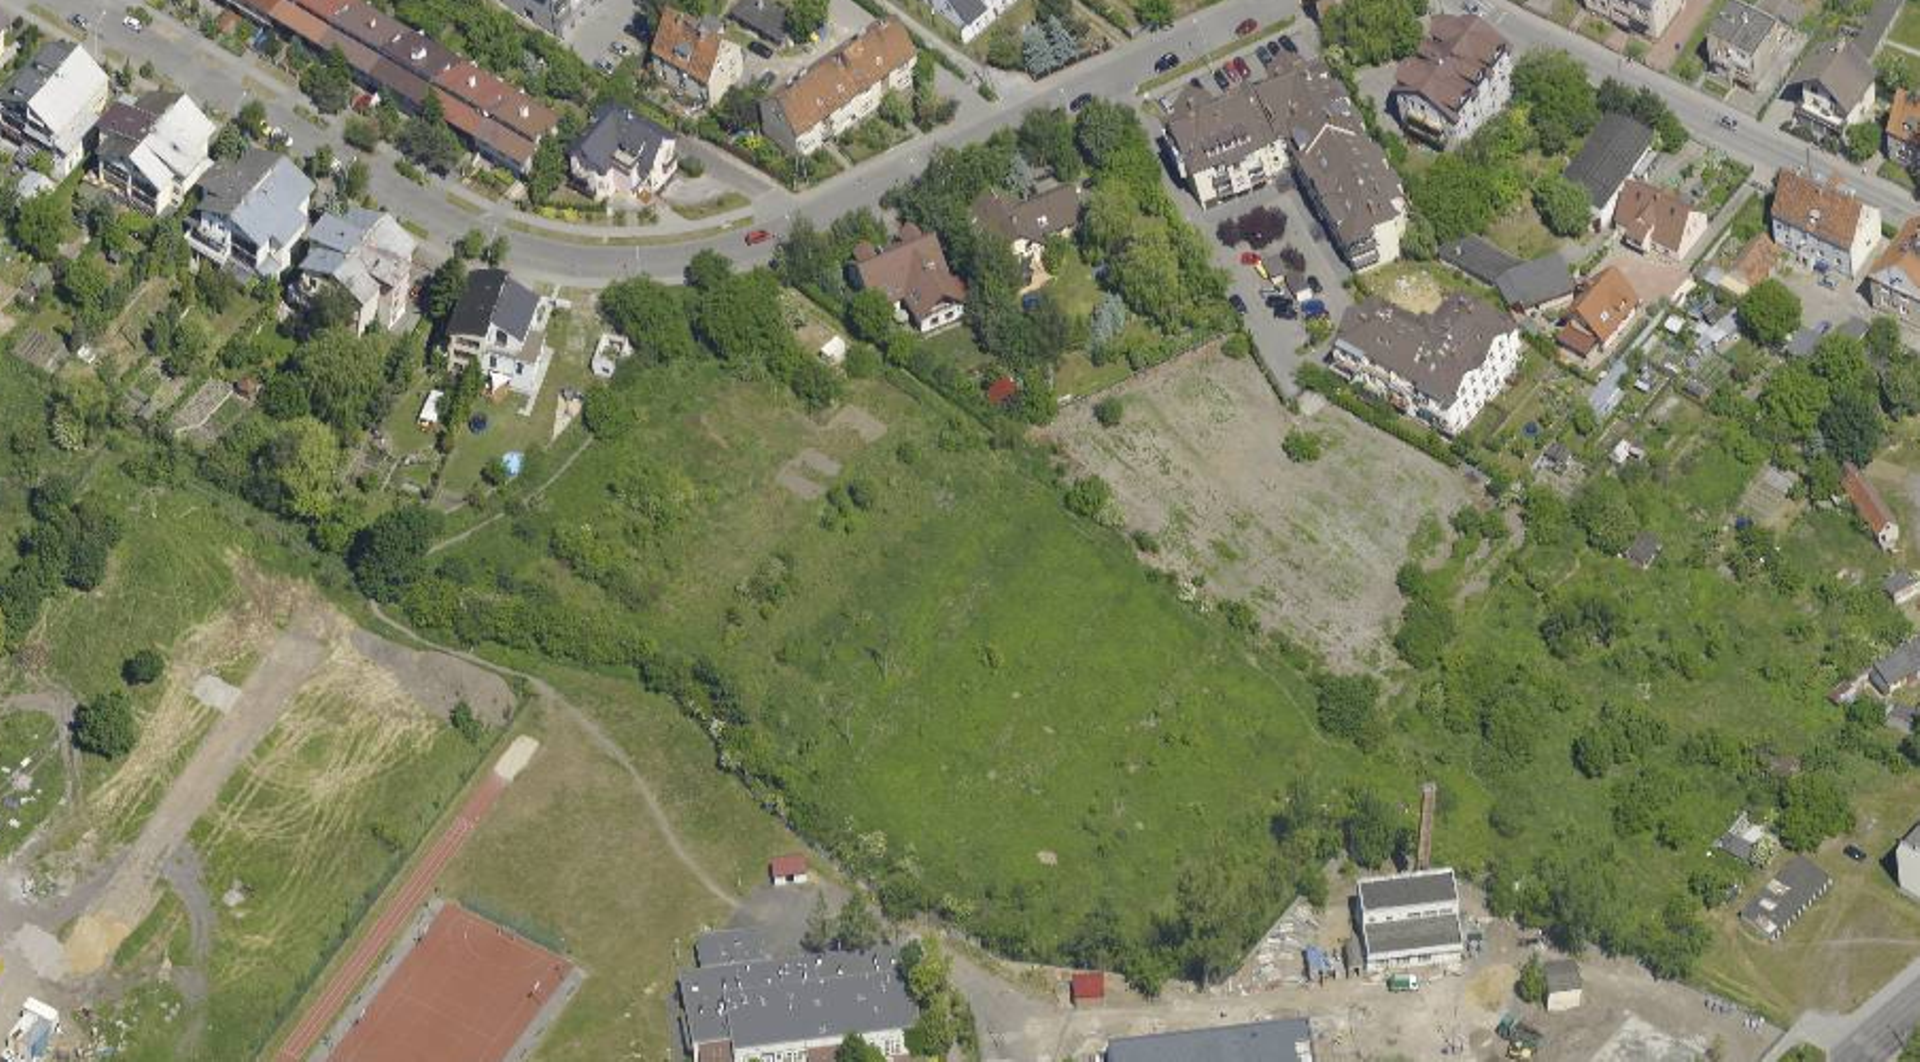 Wrocław: Deweloper wstrzymuje starania o zgodę na budowę willi miejskich na Sołtysowicach